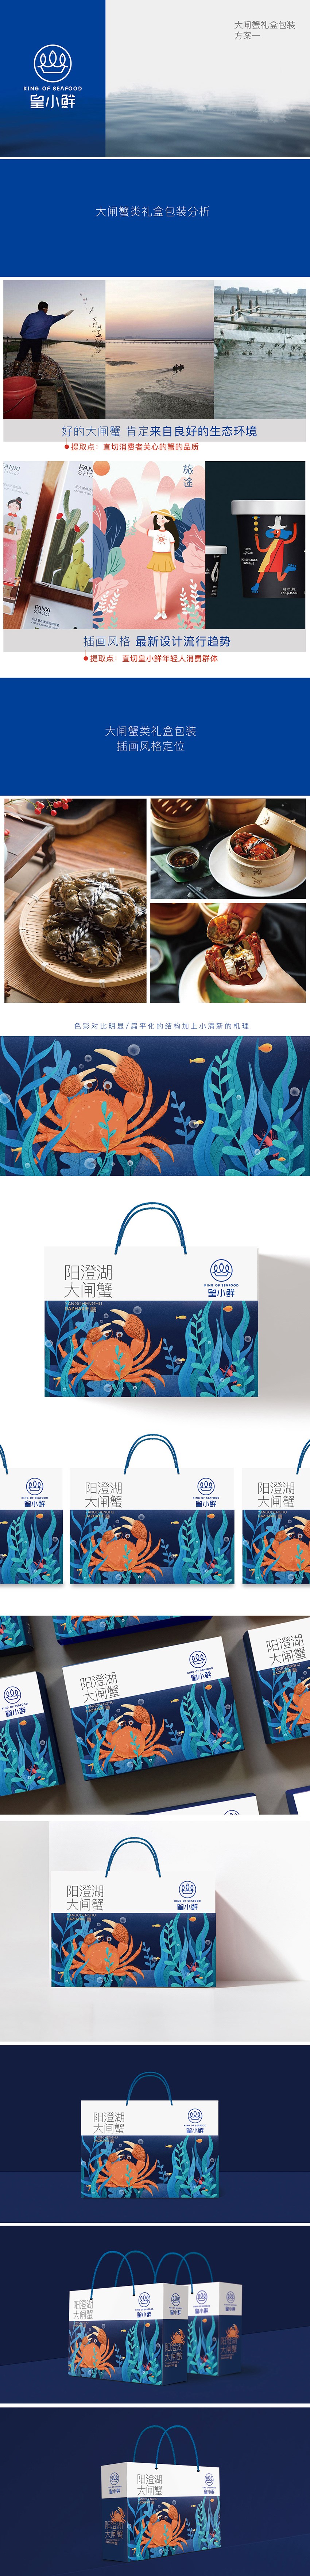 阳澄湖大闸蟹系列包装原创设计